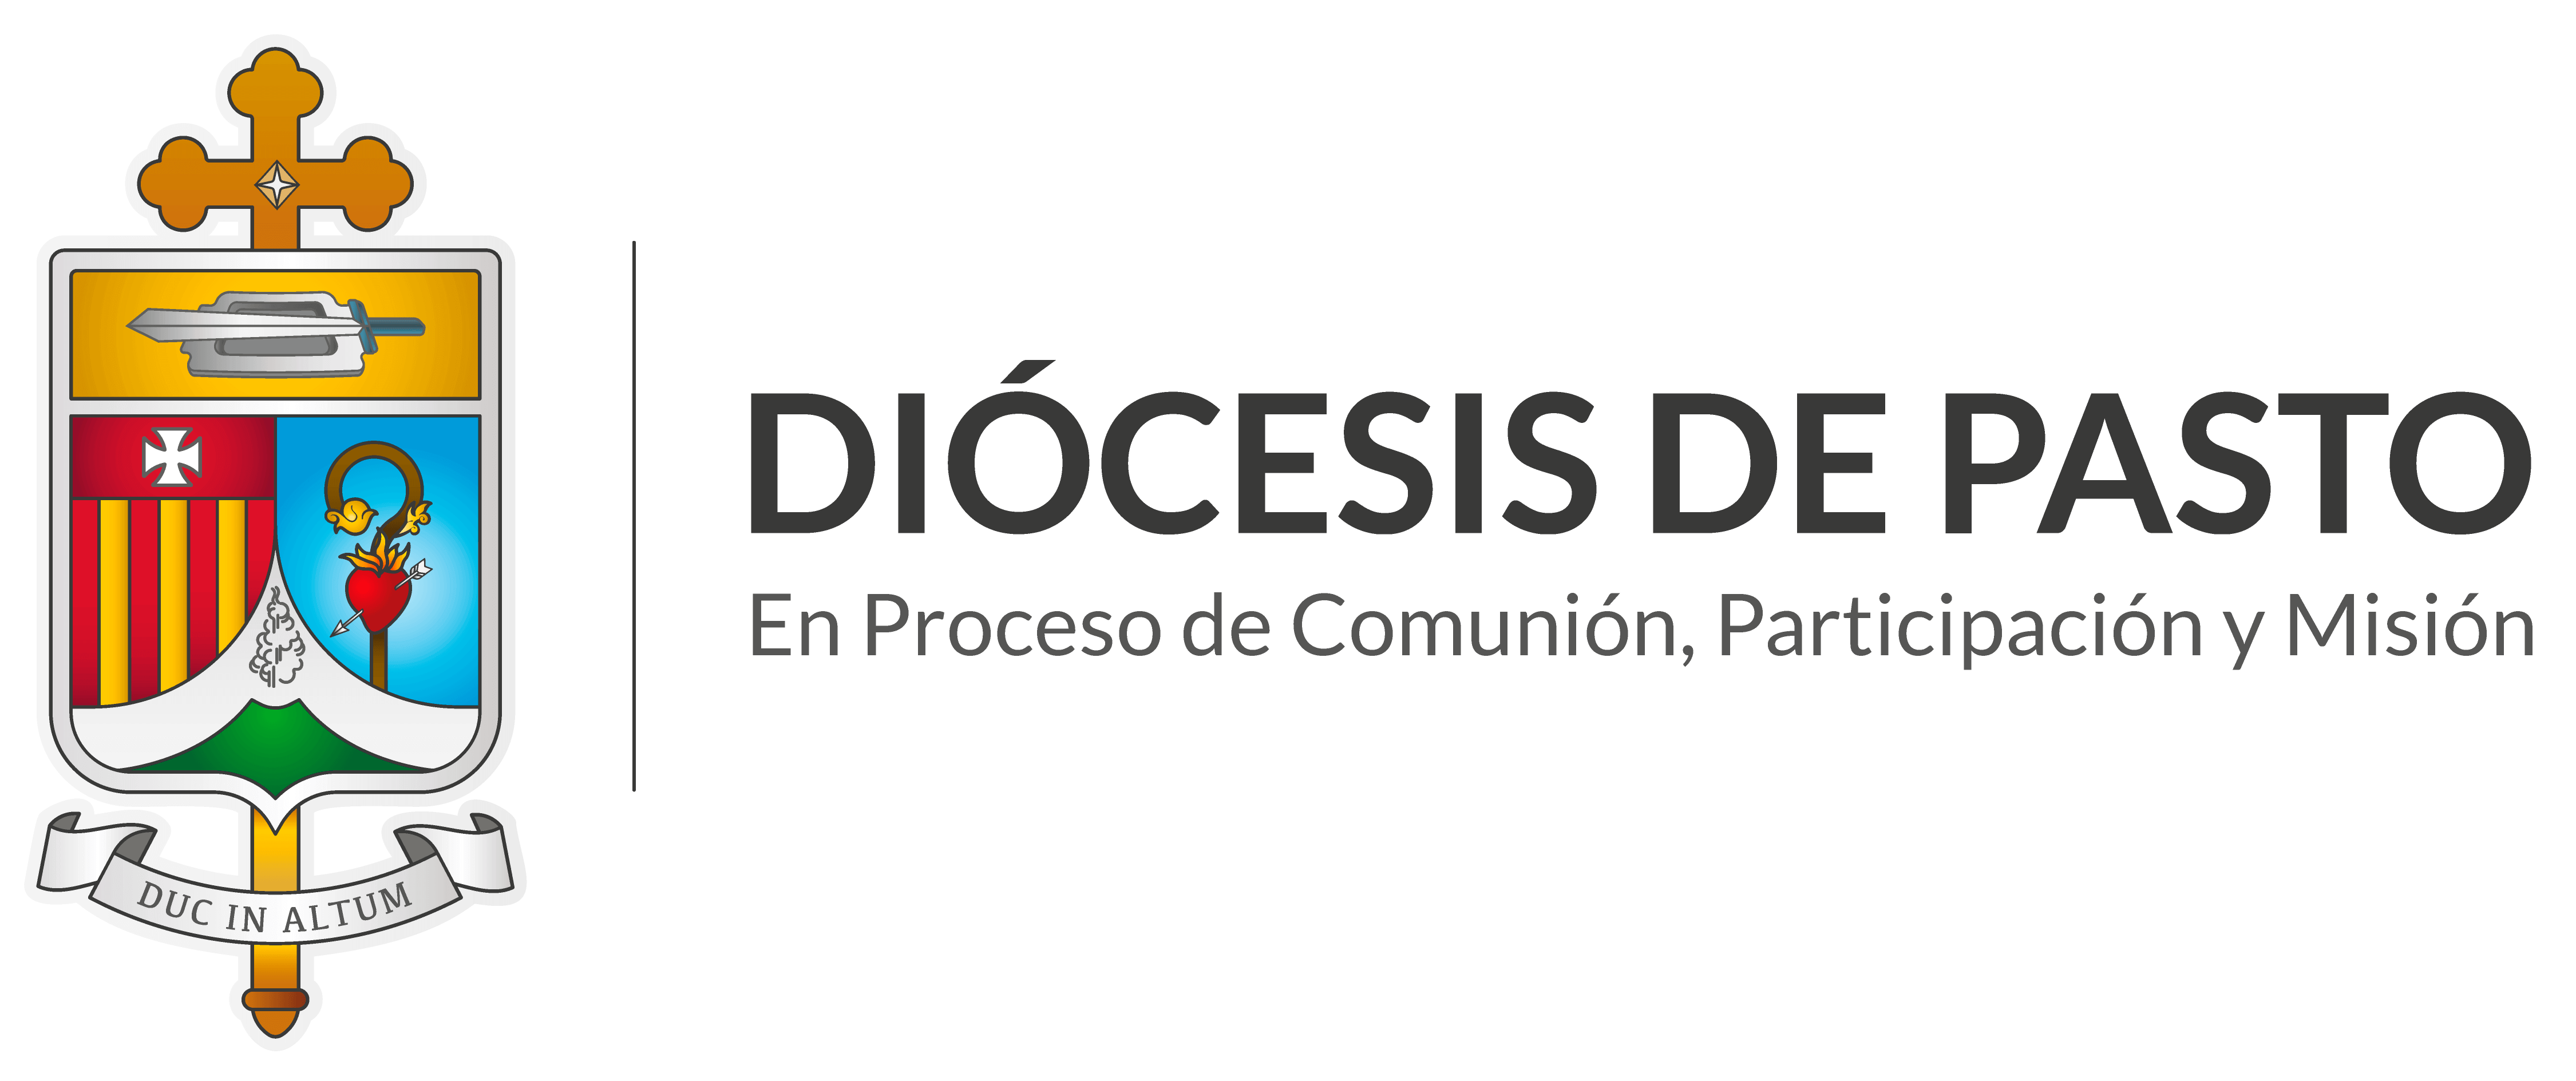 Diocesis de Pasto